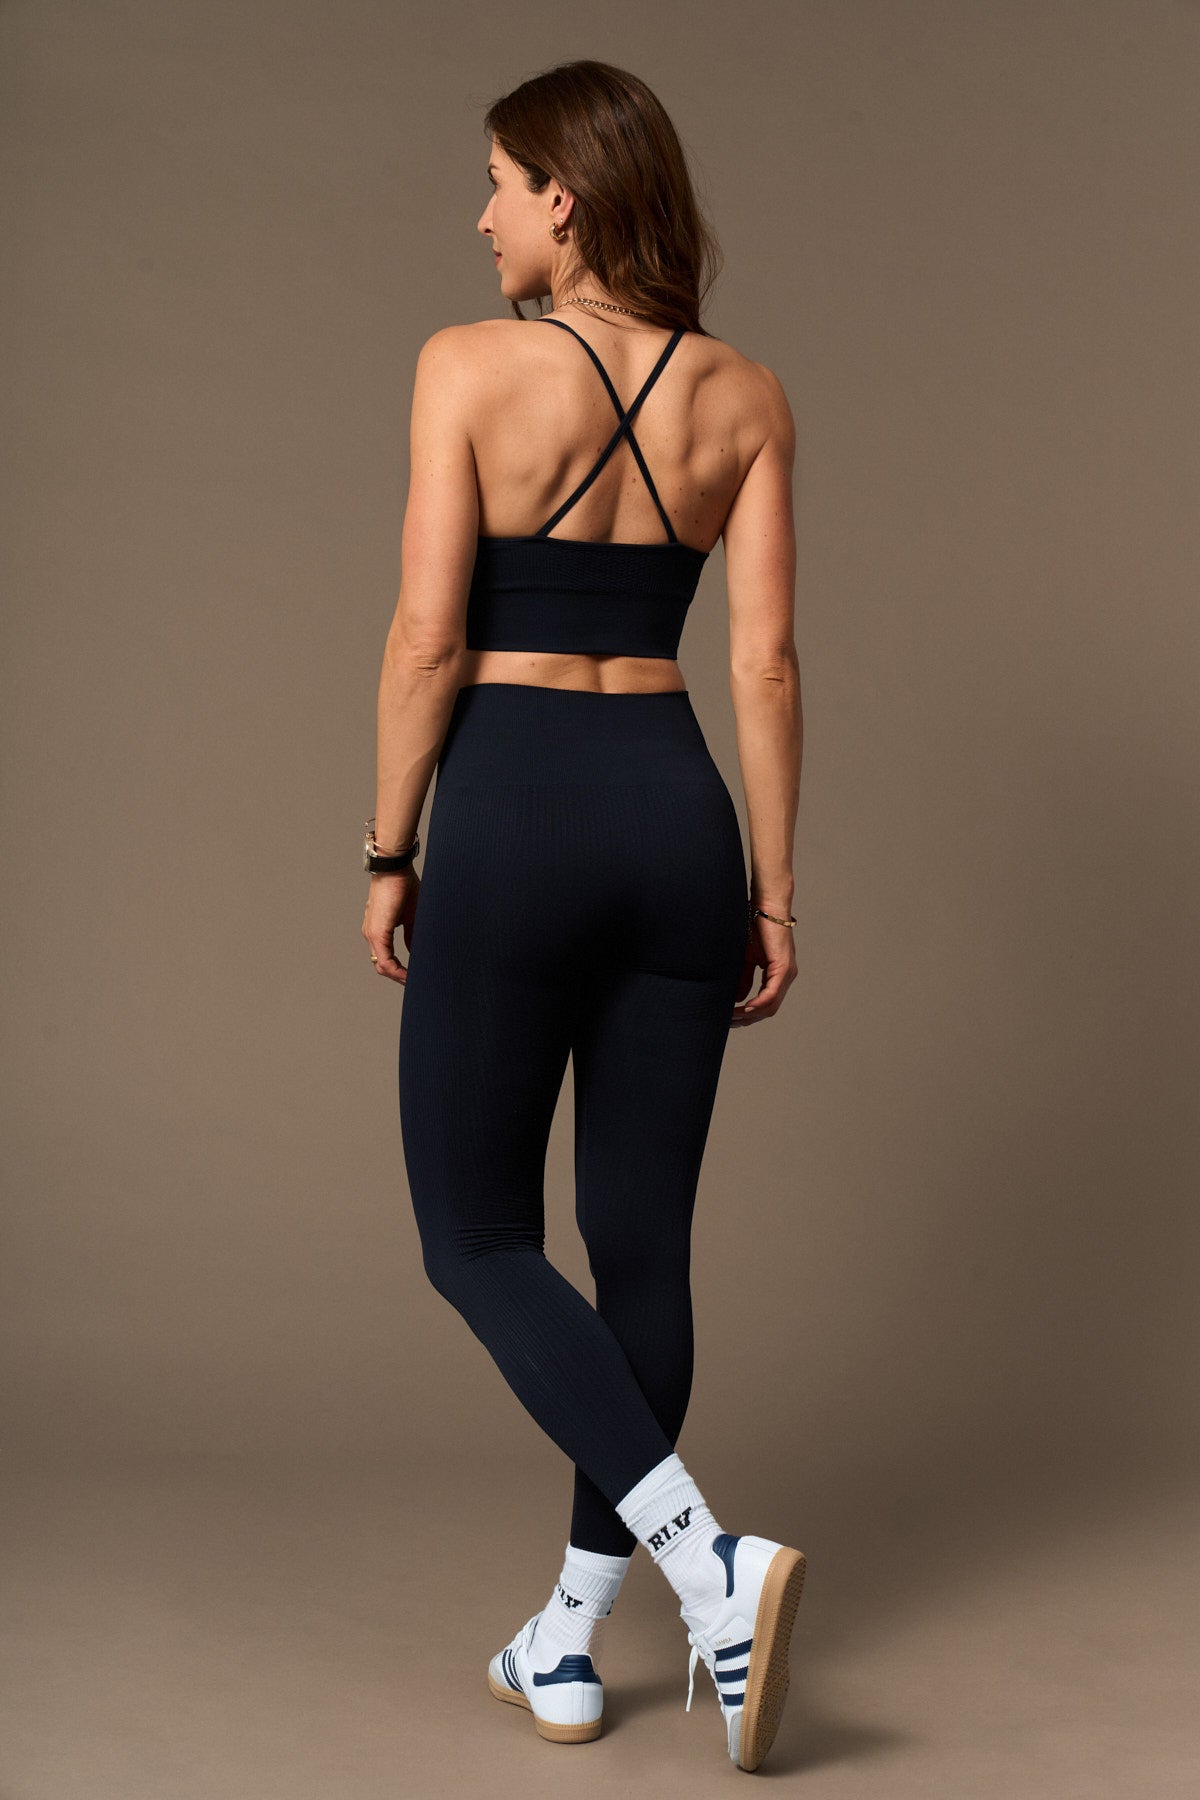 Flow Legging in Black-Long Leggings-Shop Sustainable Recycled Yoga Leggings Vêtements pour femmes en ligne Barcelona Believe Athletics Vêtements de yoga recyclés durables